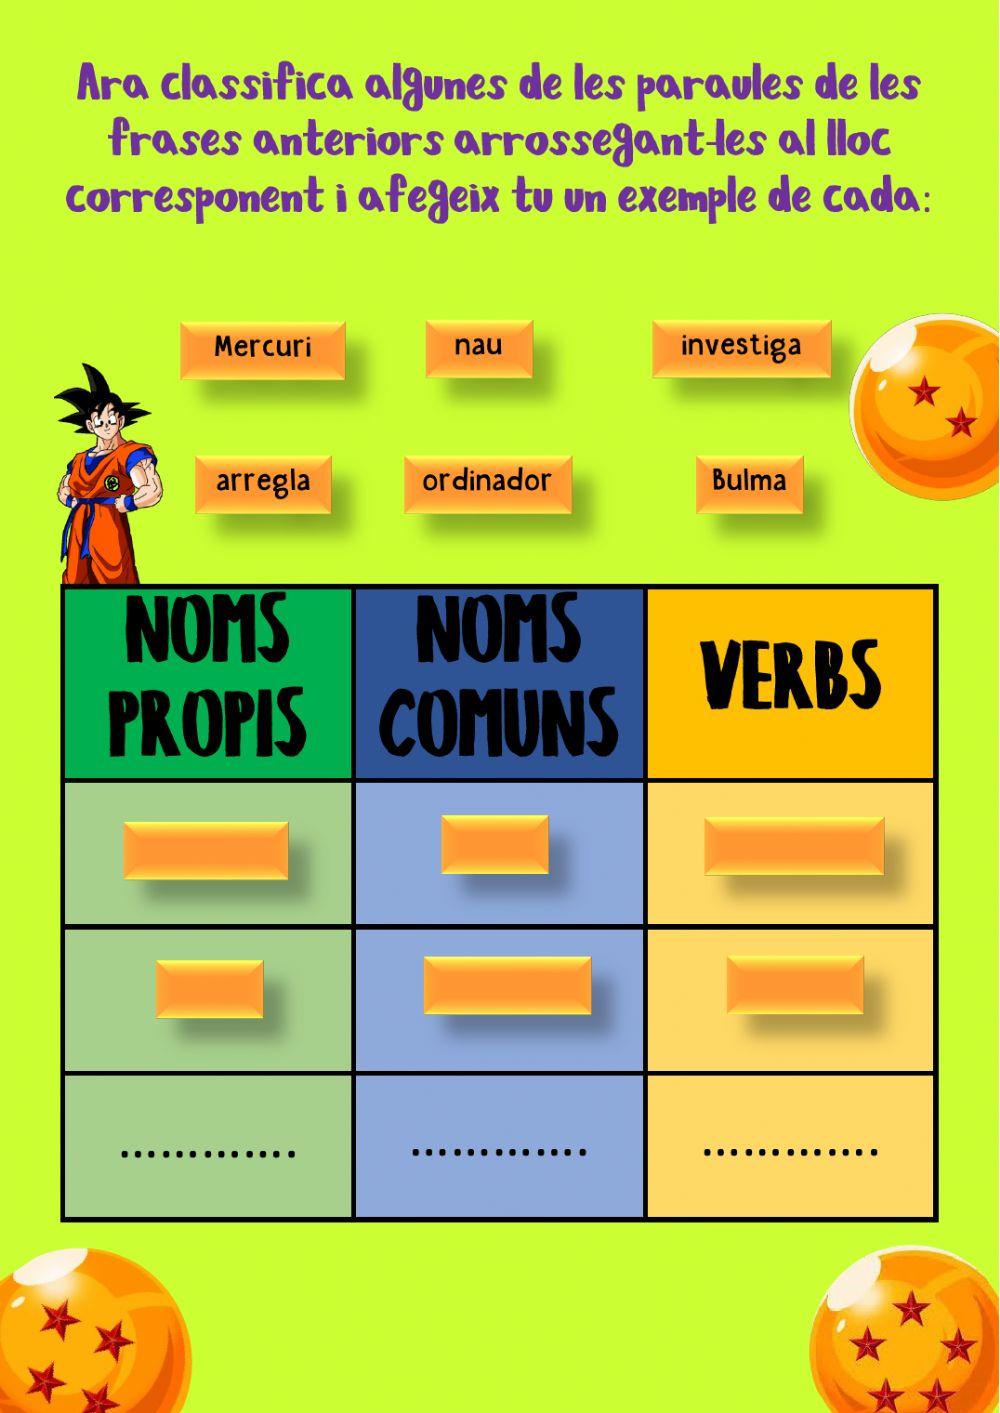 Ordenar frases, noms i verbs